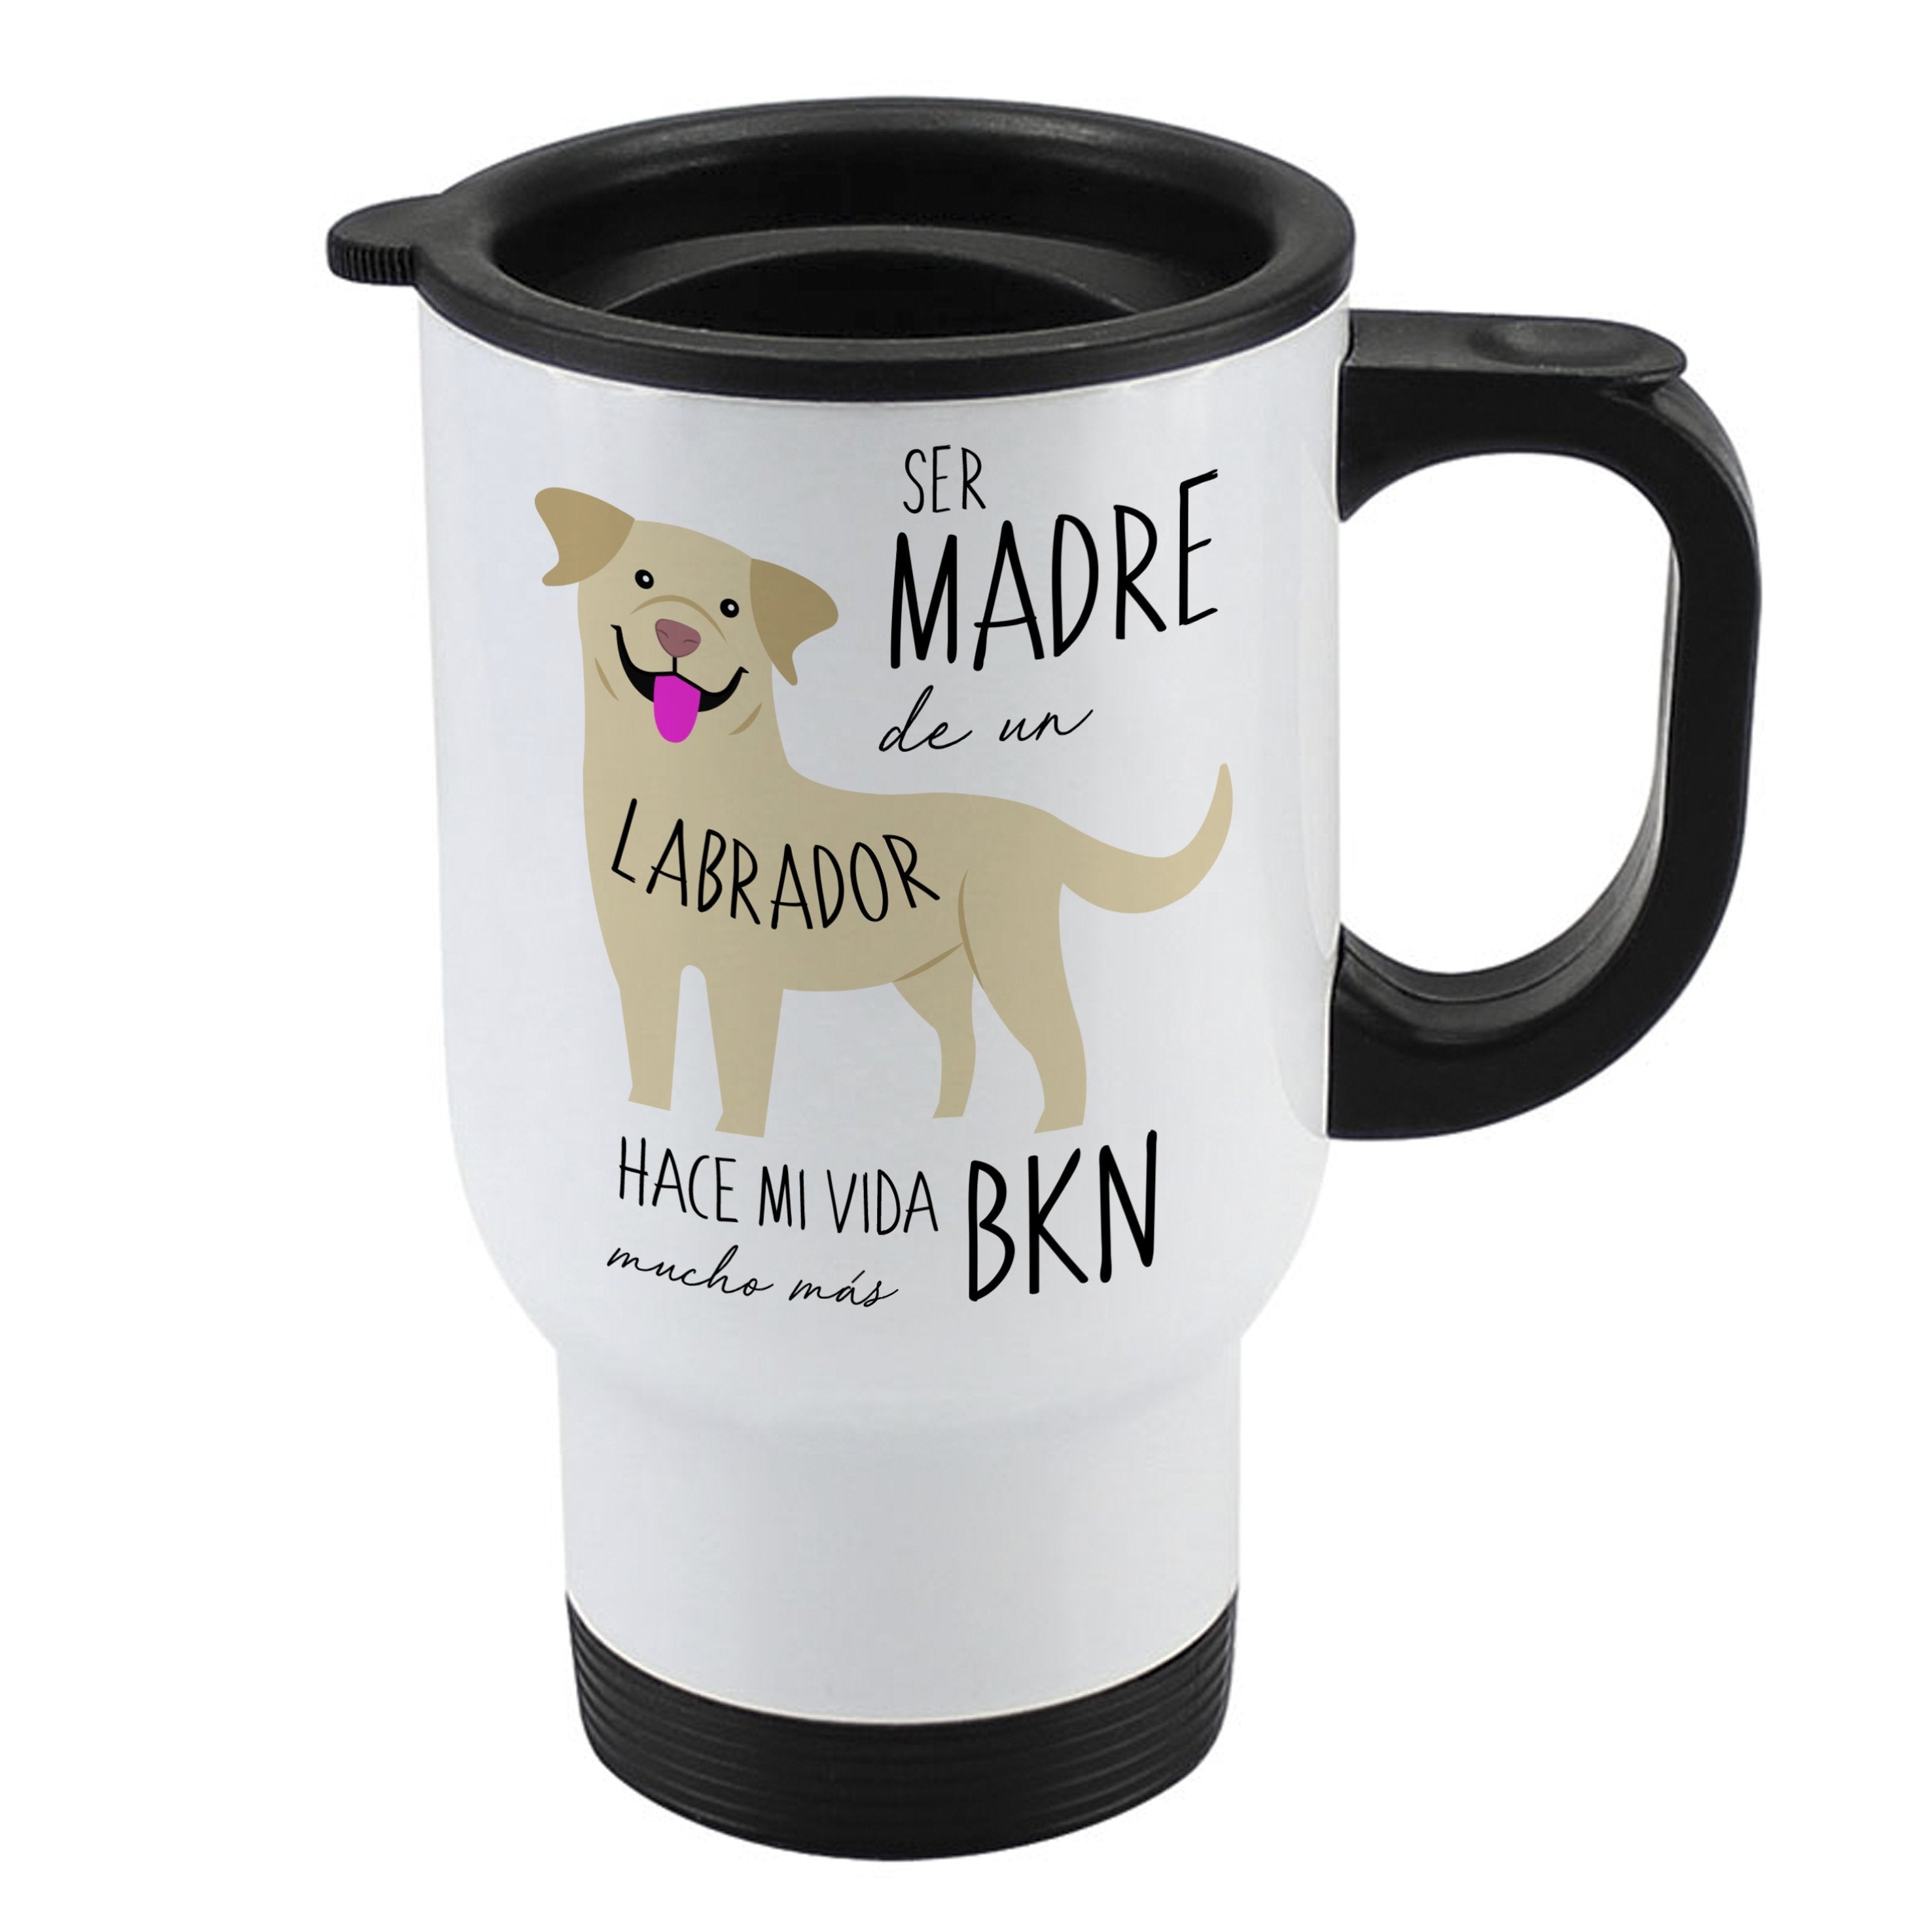 Mug 410cc - Labrador Retriever Tienda Petfy Madre Wheat